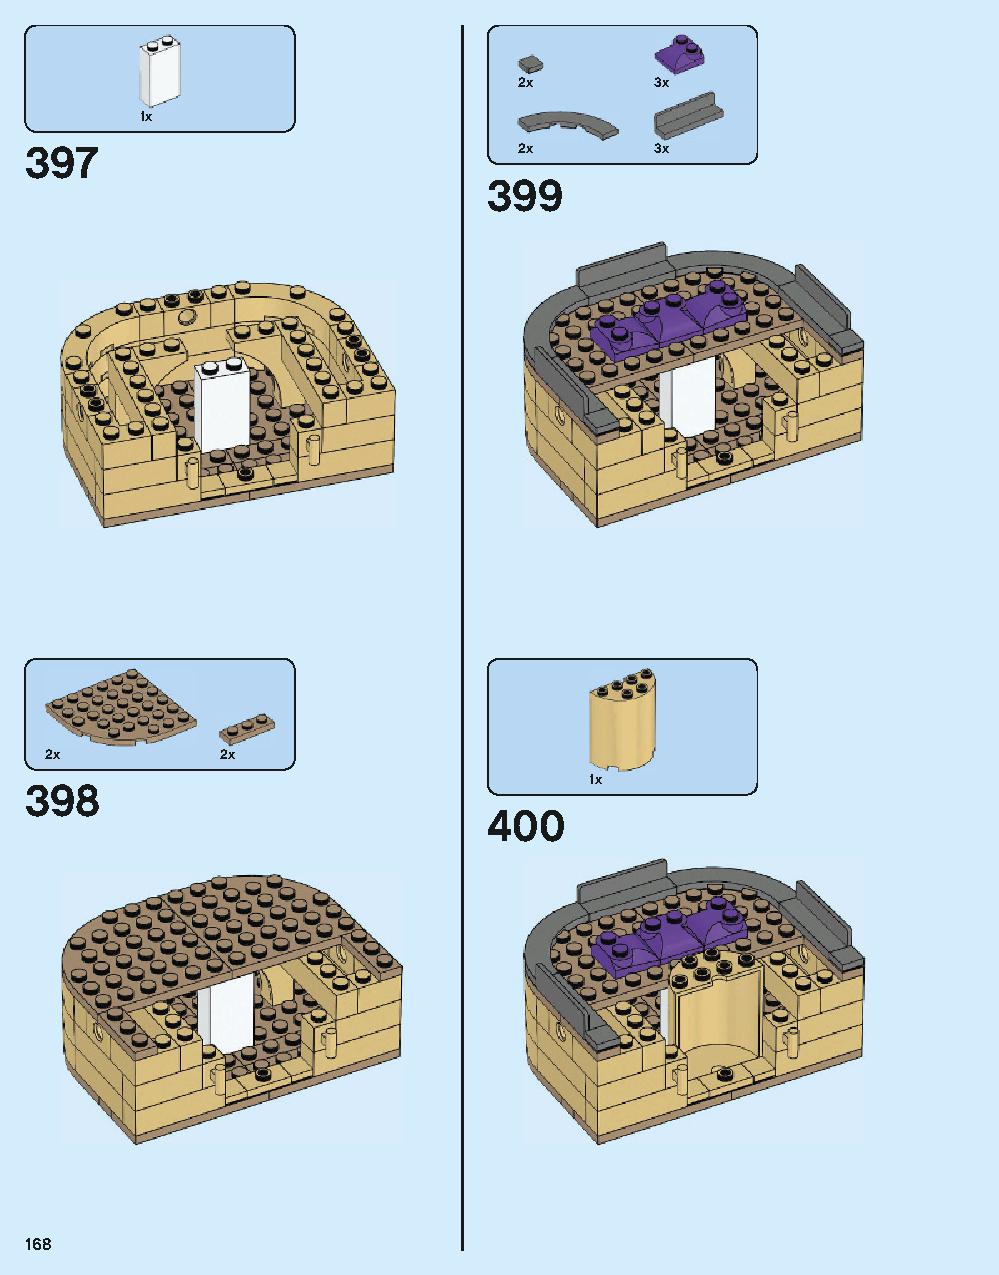 ホグワーツ城 71043 レゴの商品情報 レゴの説明書・組立方法 168 page